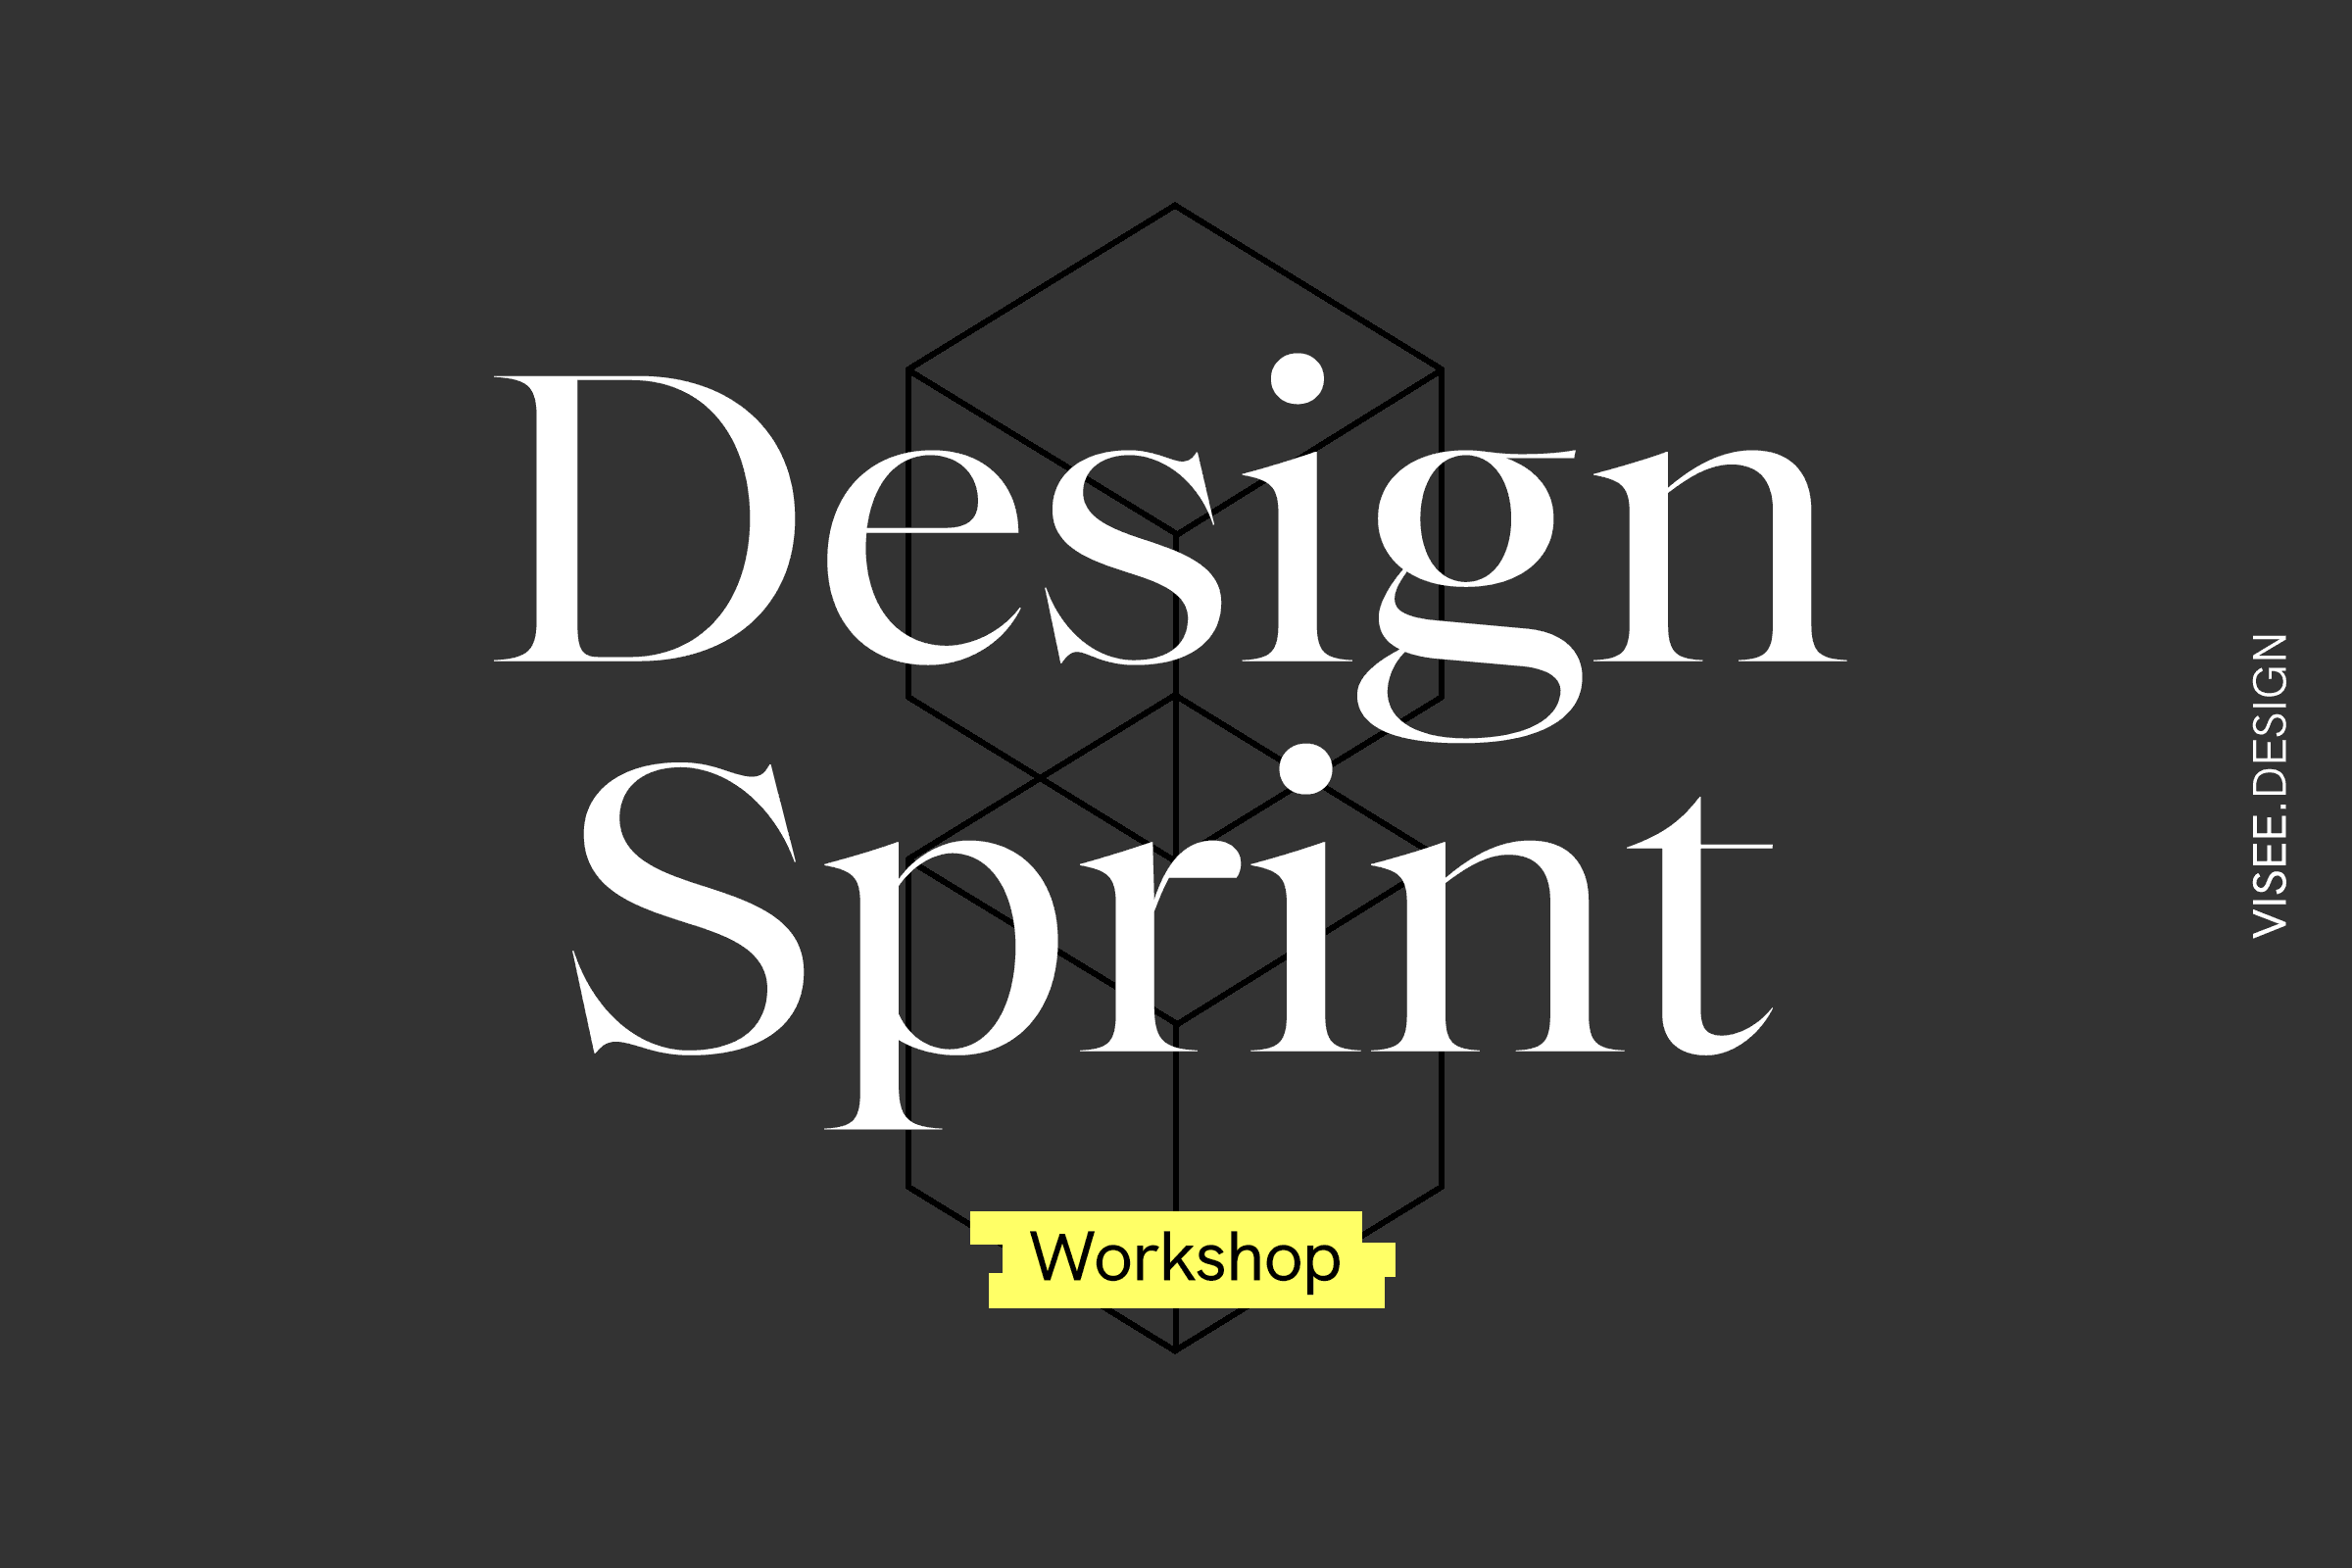 Teaser_Workshop_DesignSprint-2